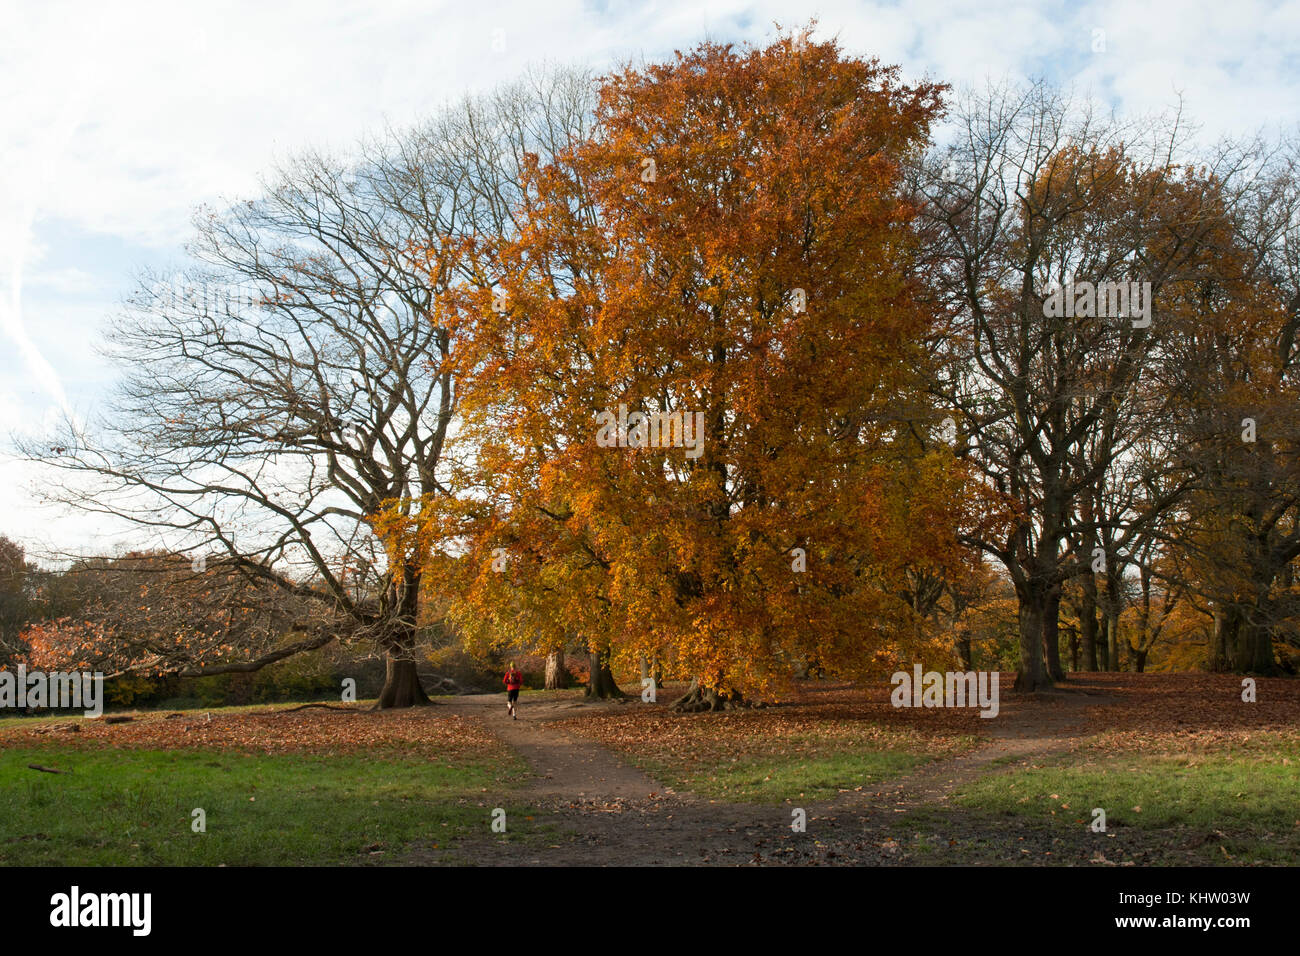 Bosquet de grands arbres en automne/ hiver à Hampstead Heath, Londres Uk. Couleurs chaudes. Idéal pour la marche/ d'exécution. Banque D'Images